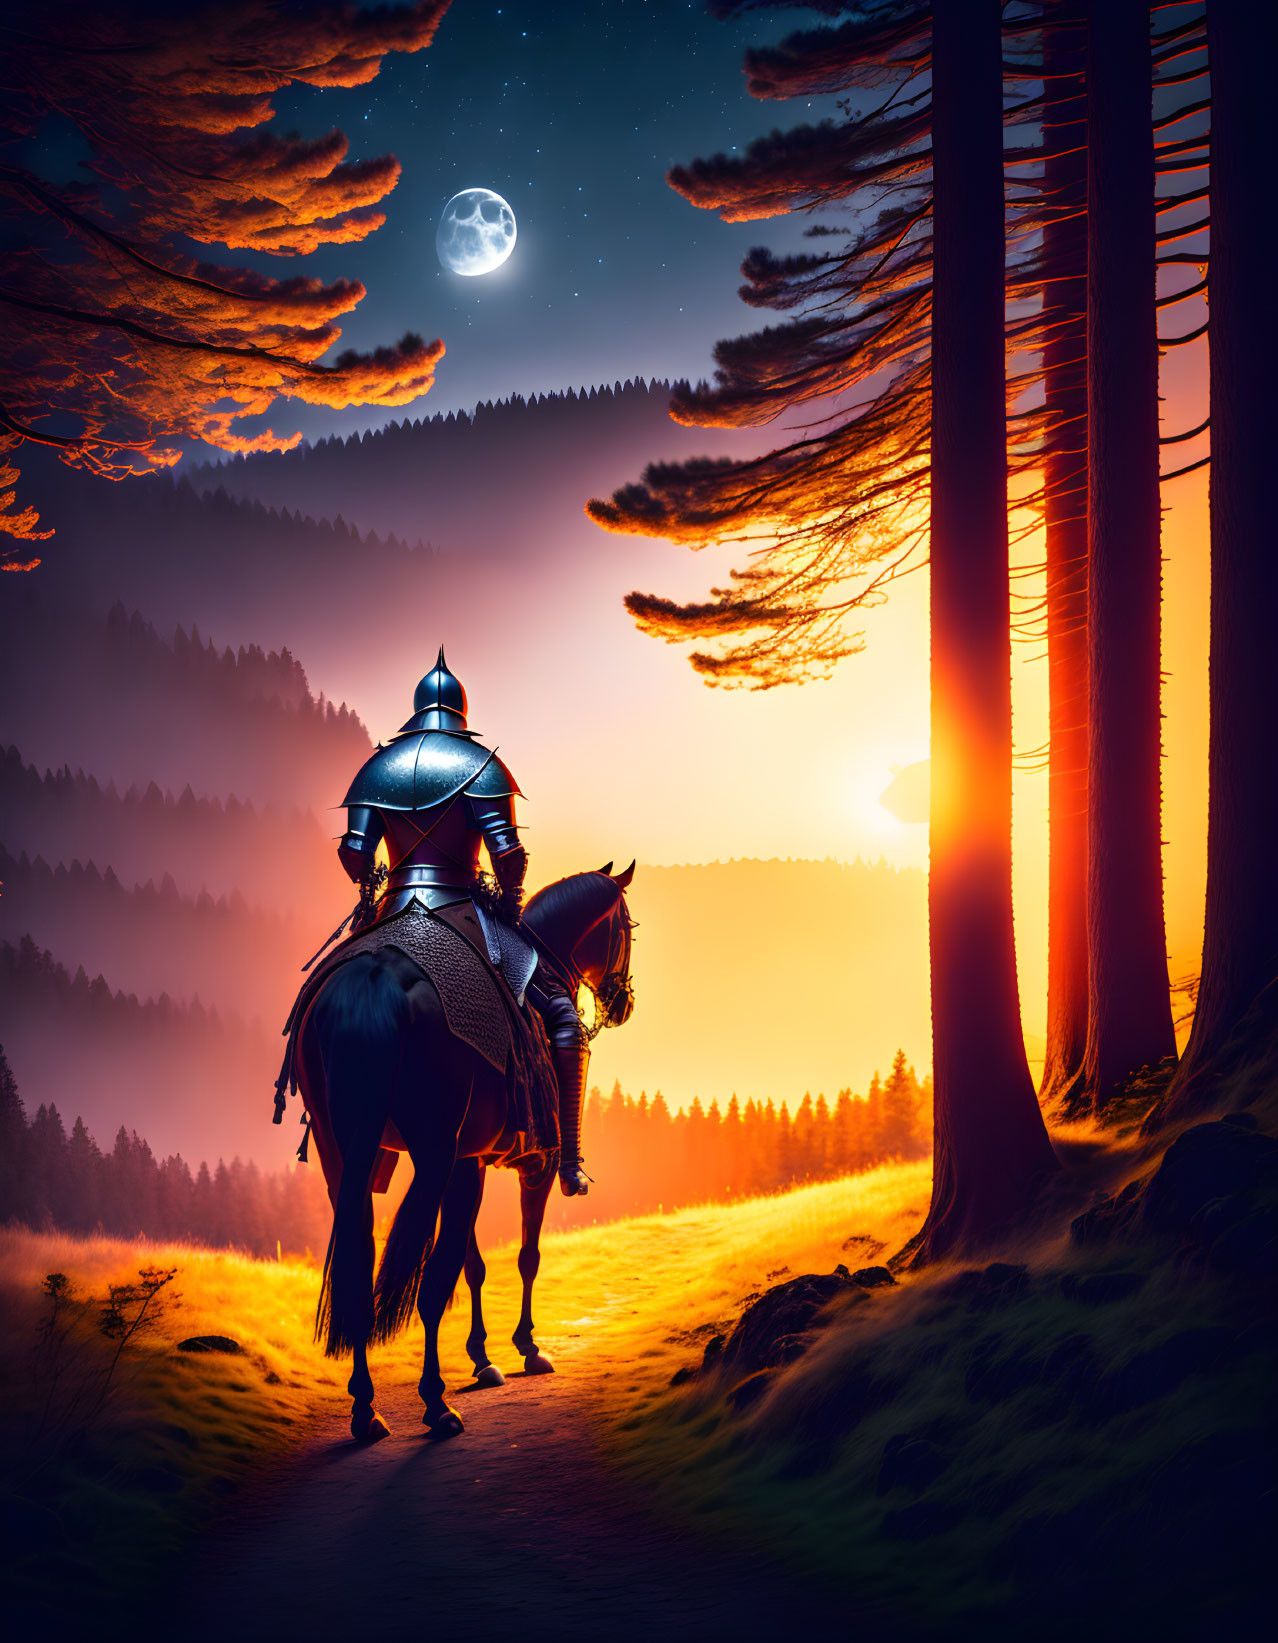 Knight on Horseback Silhouetted Against Vibrant Dusk Sky